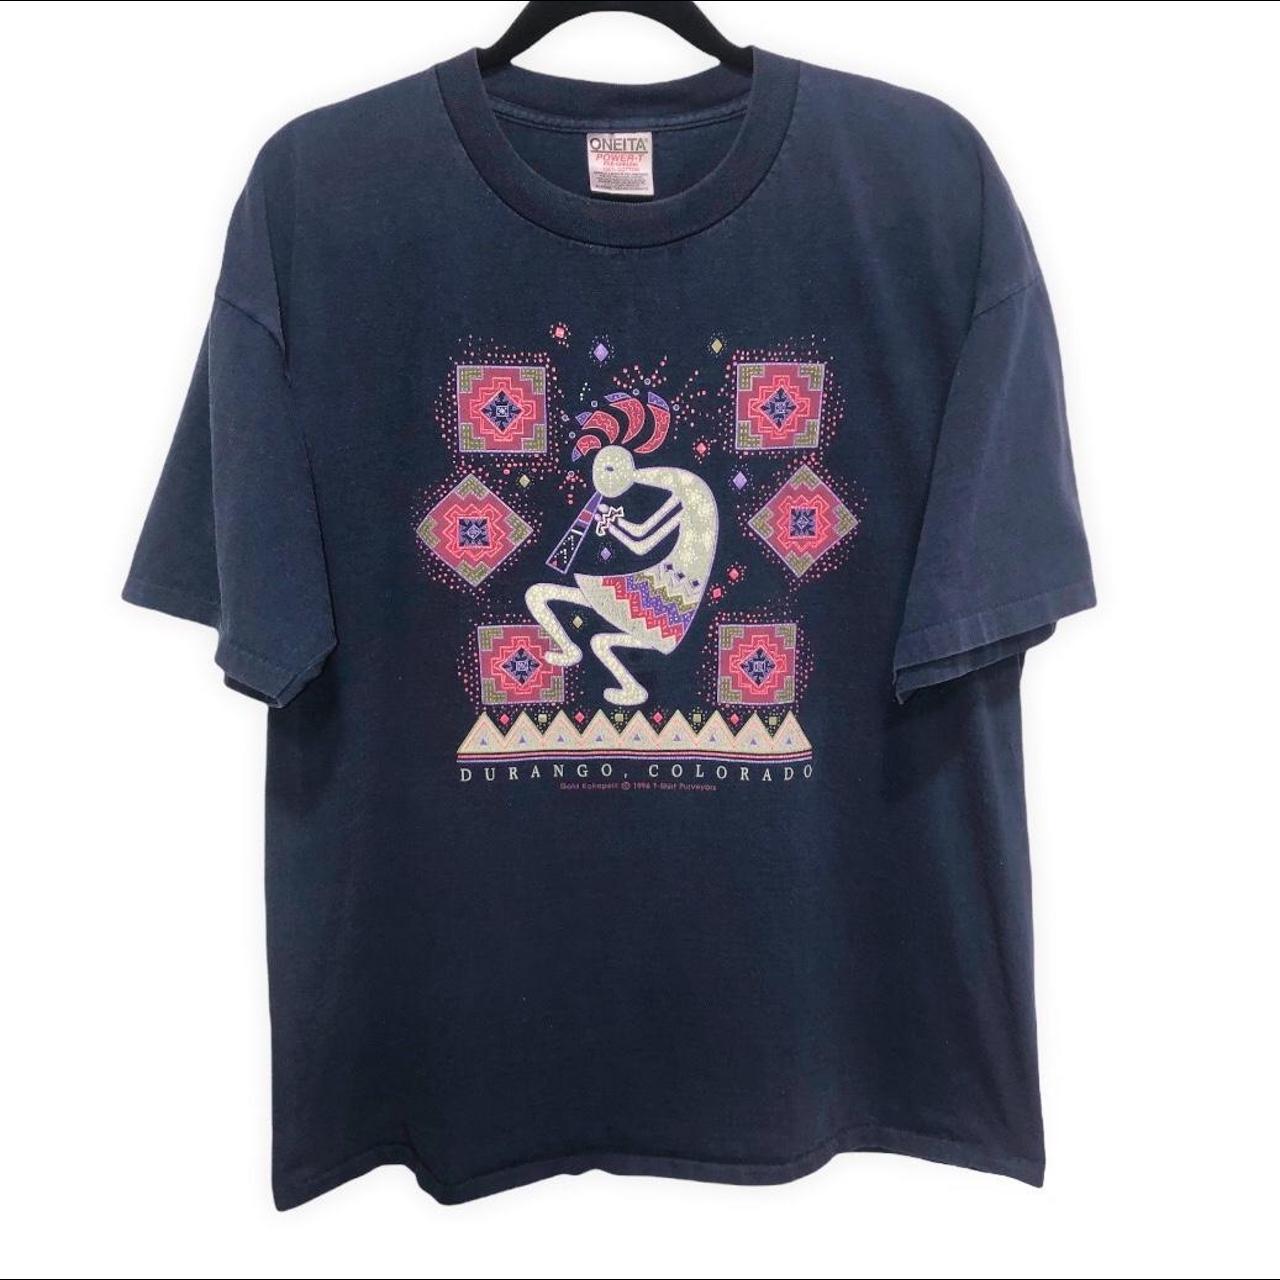 1996 Durango Colorado Single Stitch Tshirt Vintage... - Depop